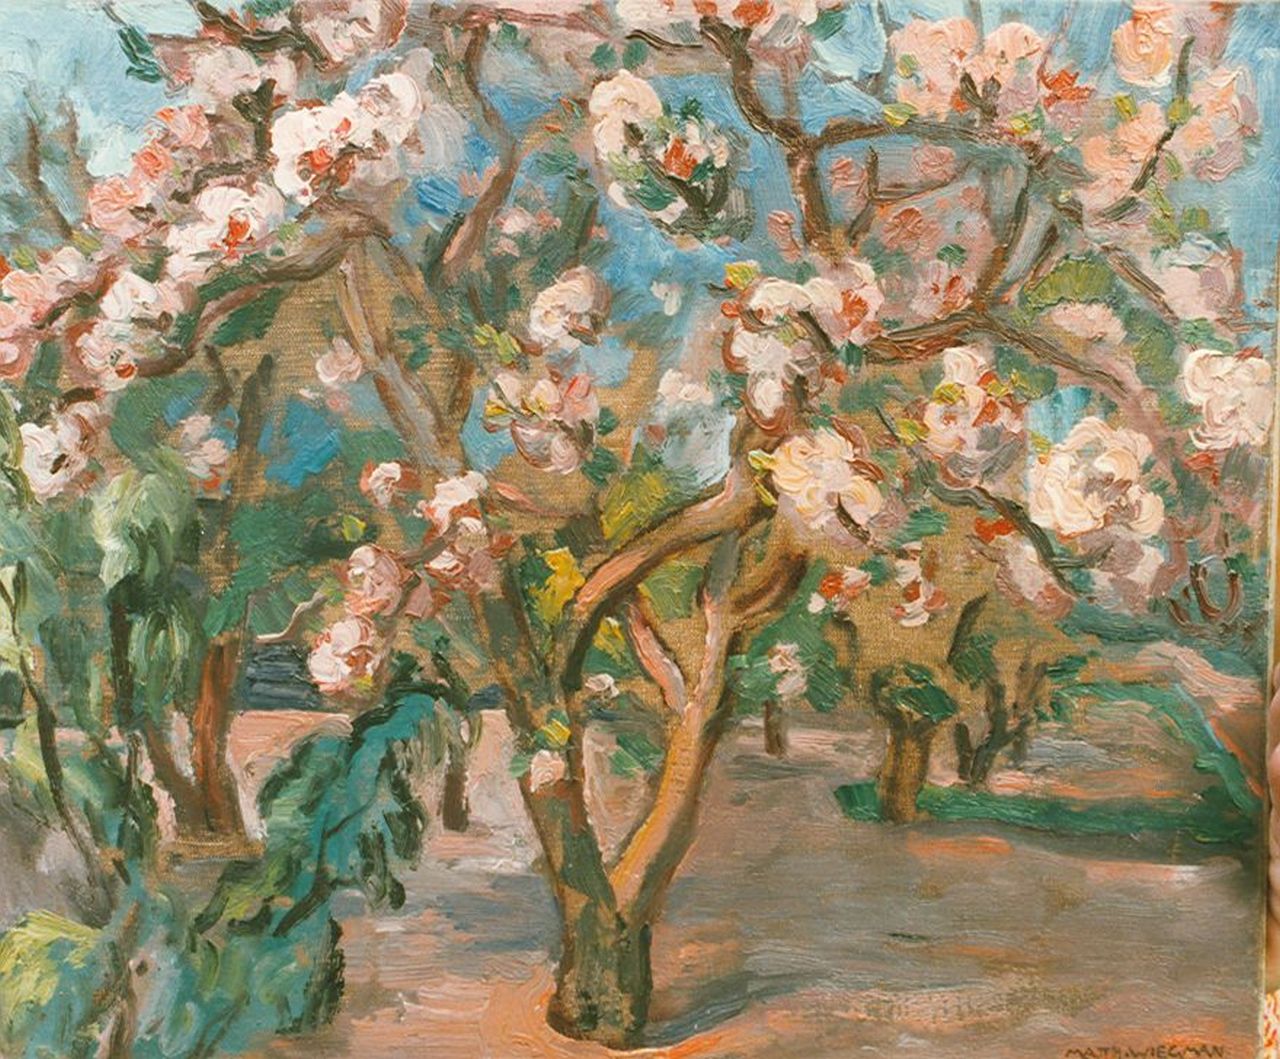 Wiegman M.J.M.  | Mattheus Johannes Marie 'Matthieu' Wiegman, Bloeiende bomen, olieverf op doek 38,0 x 46,0 cm, gesigneerd rechtsonder